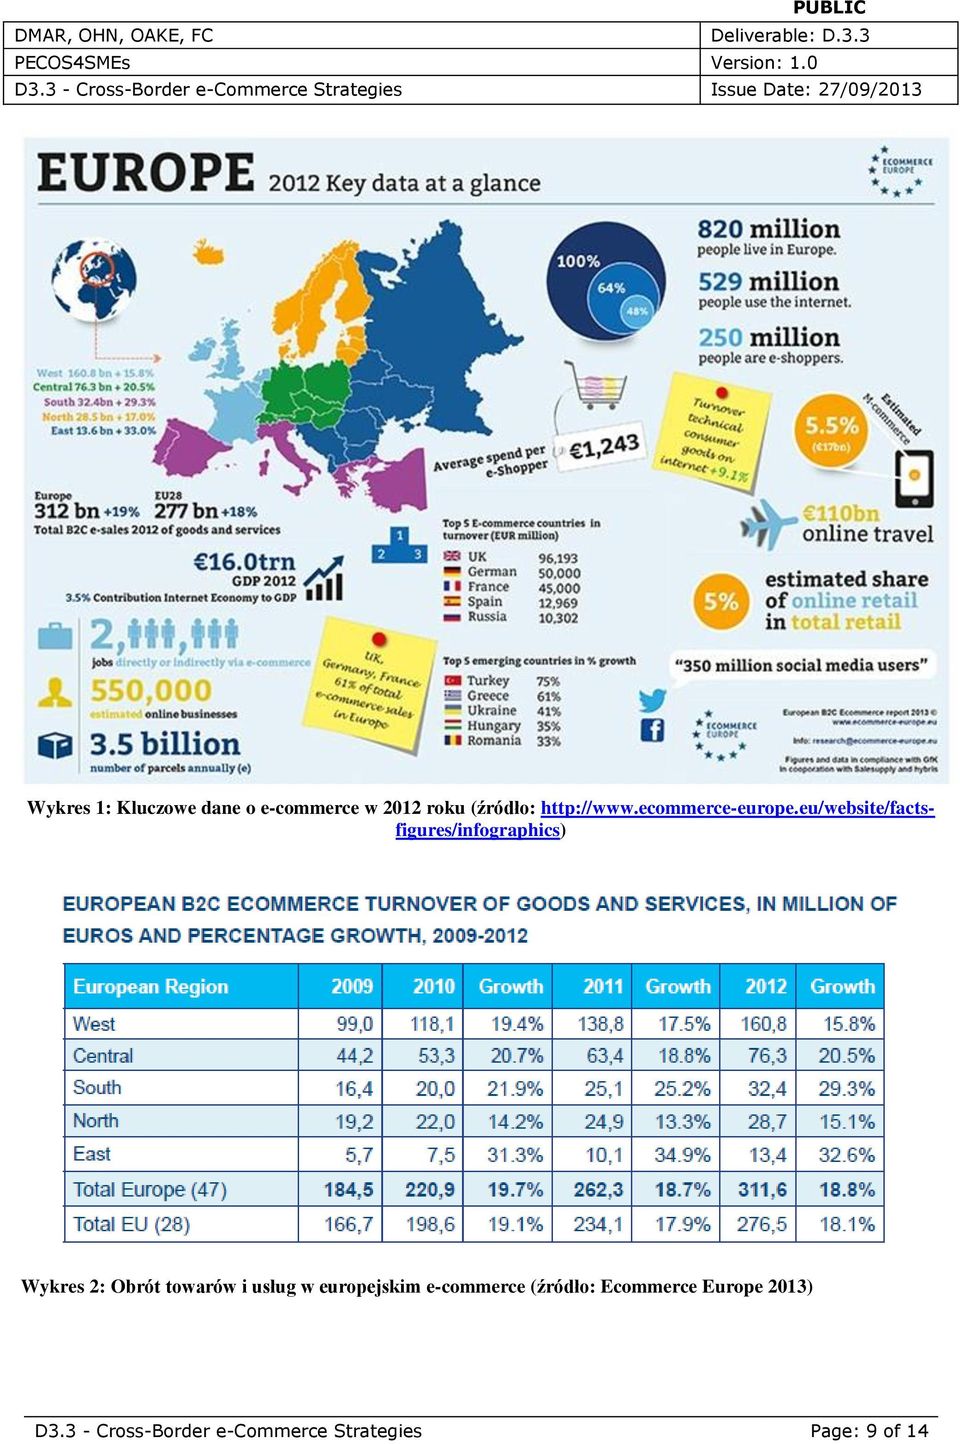 eu/website/factsfigures/infographics) Wykres 2: Obrót towarów i